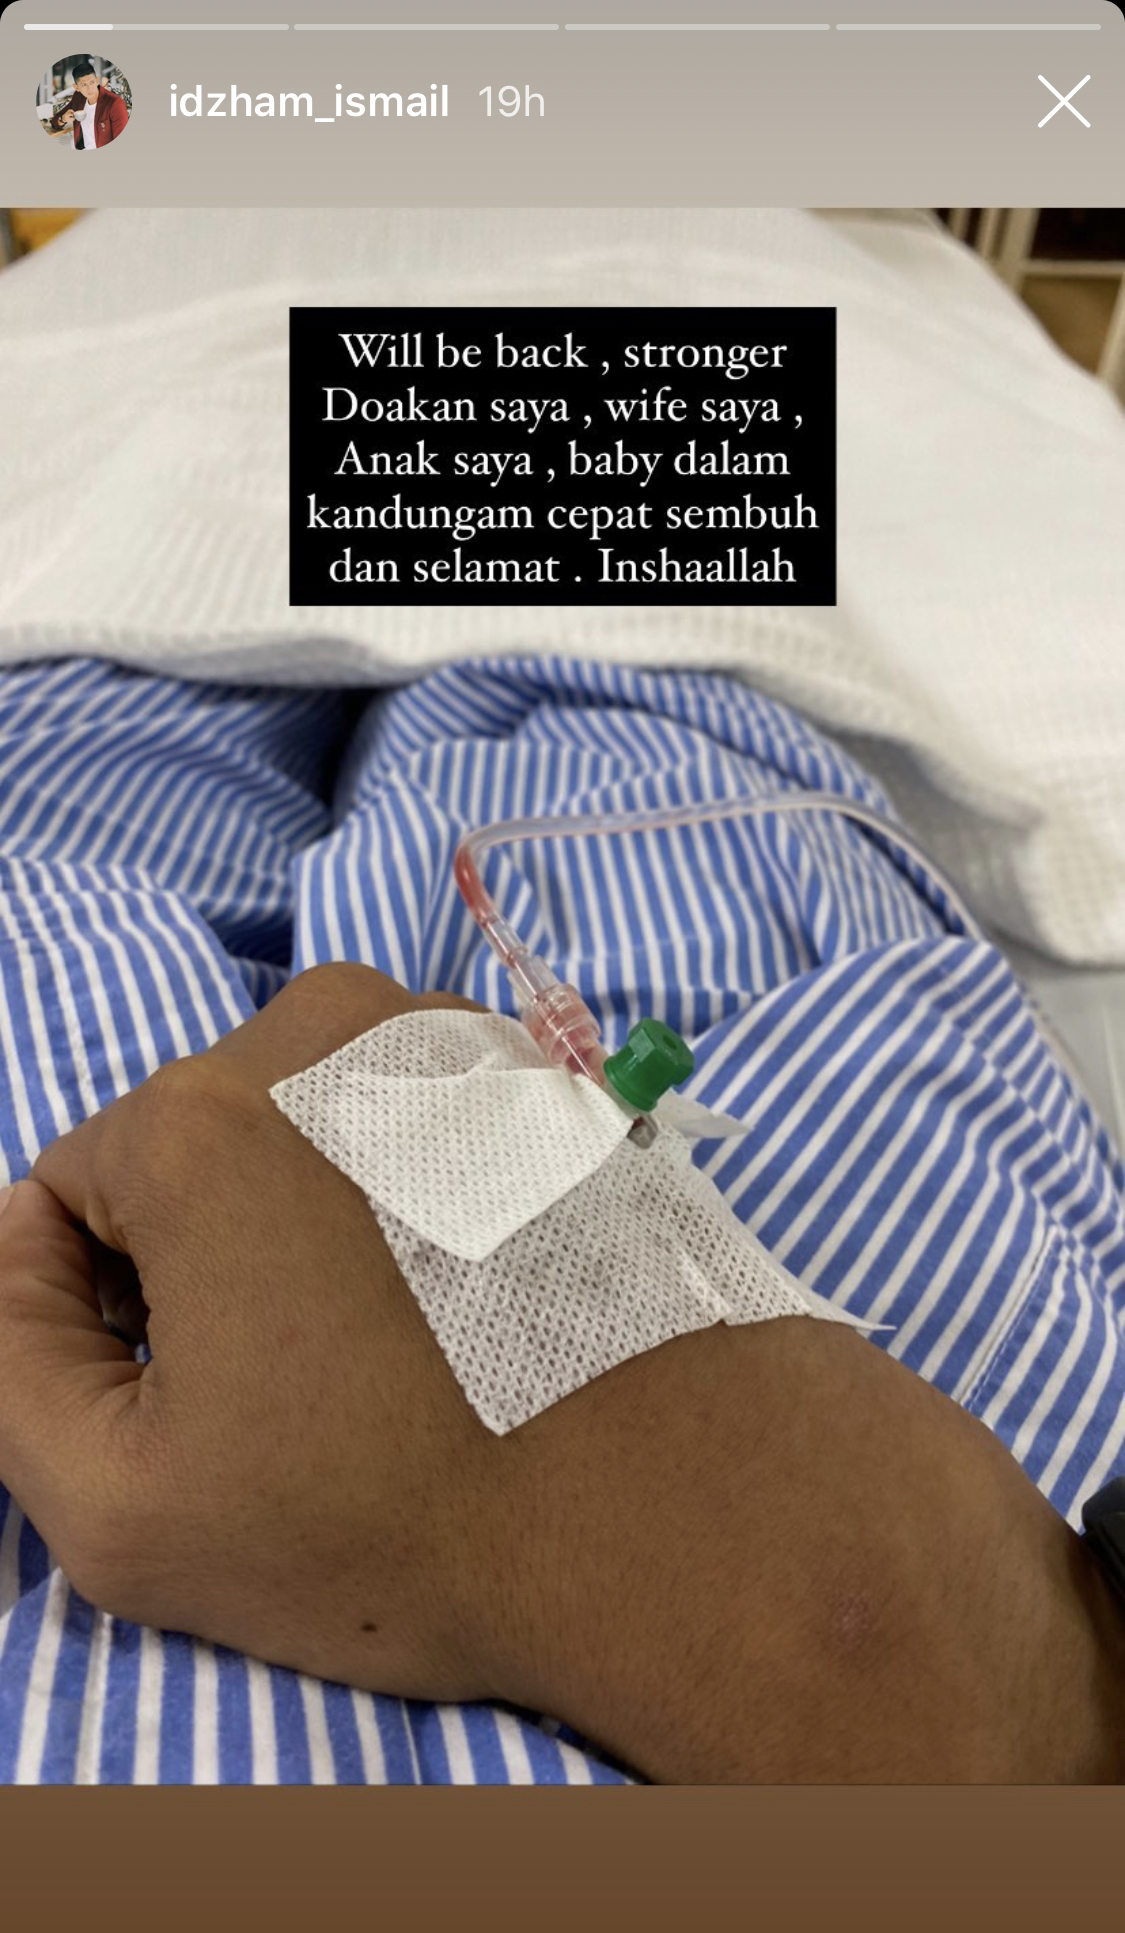 “Doakan Baby Dalam Kandungan Selamat,” &#8211; Satu Famili Masuk Hospital, Apa Yang Berlaku Pada Keluarga Idzham Ismail?